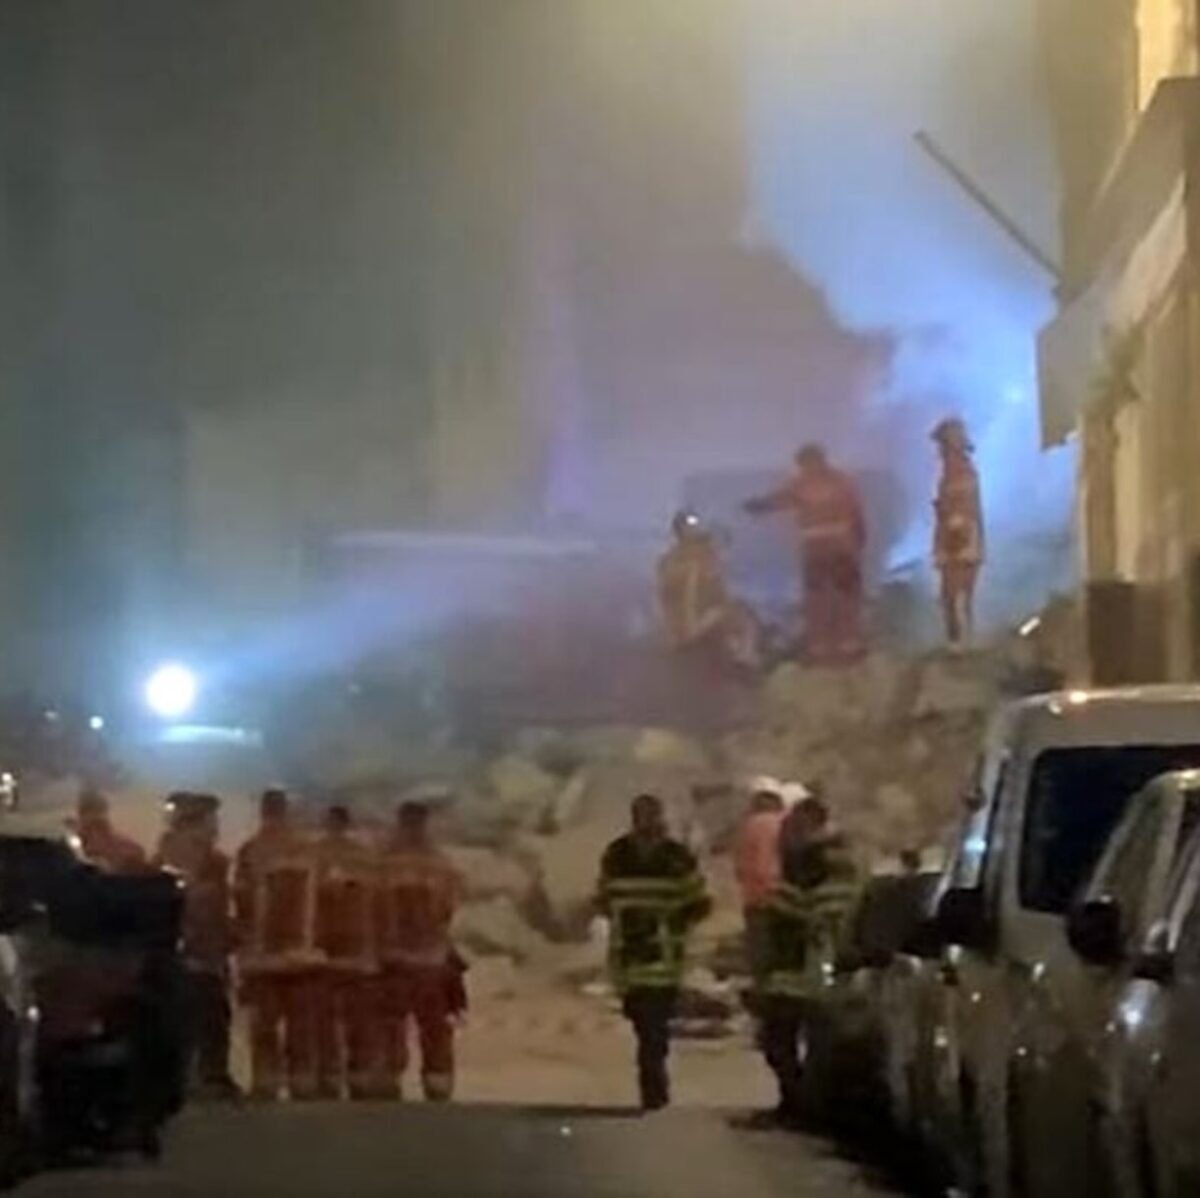 Crolla un palazzo in centro: morti, feriti e dispersi